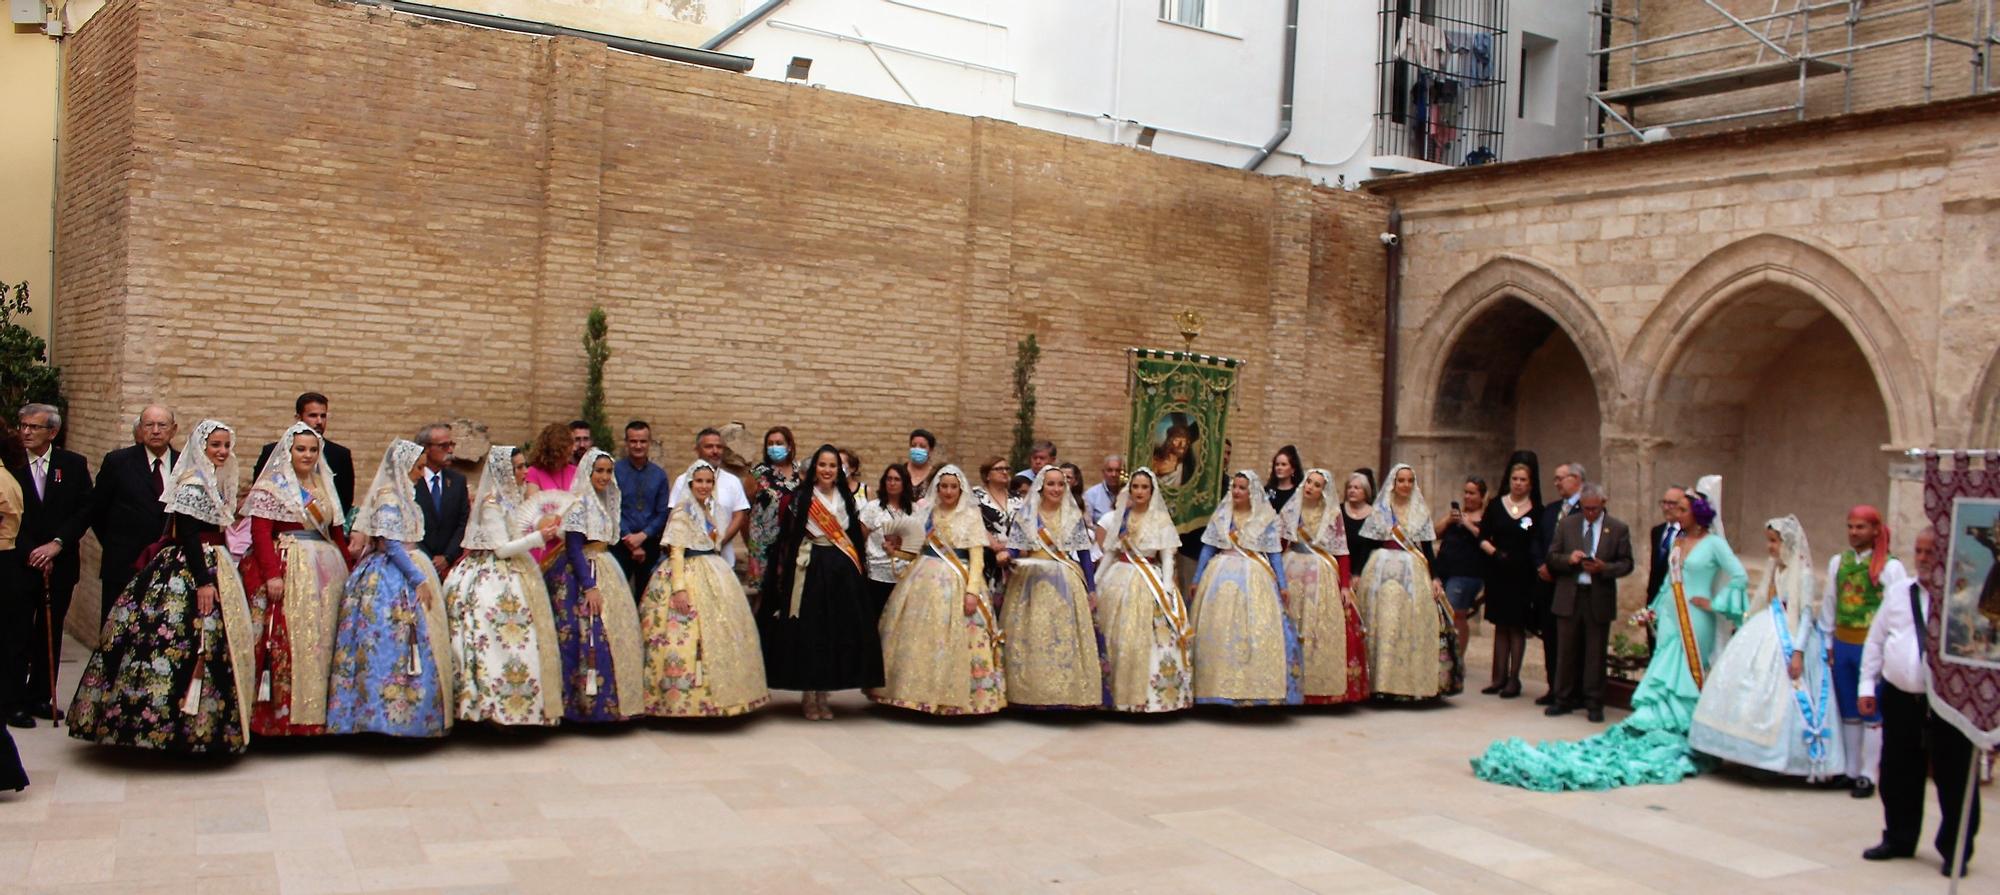 Fallas y fiestas tradicionales se dan la mano en Sant Bult